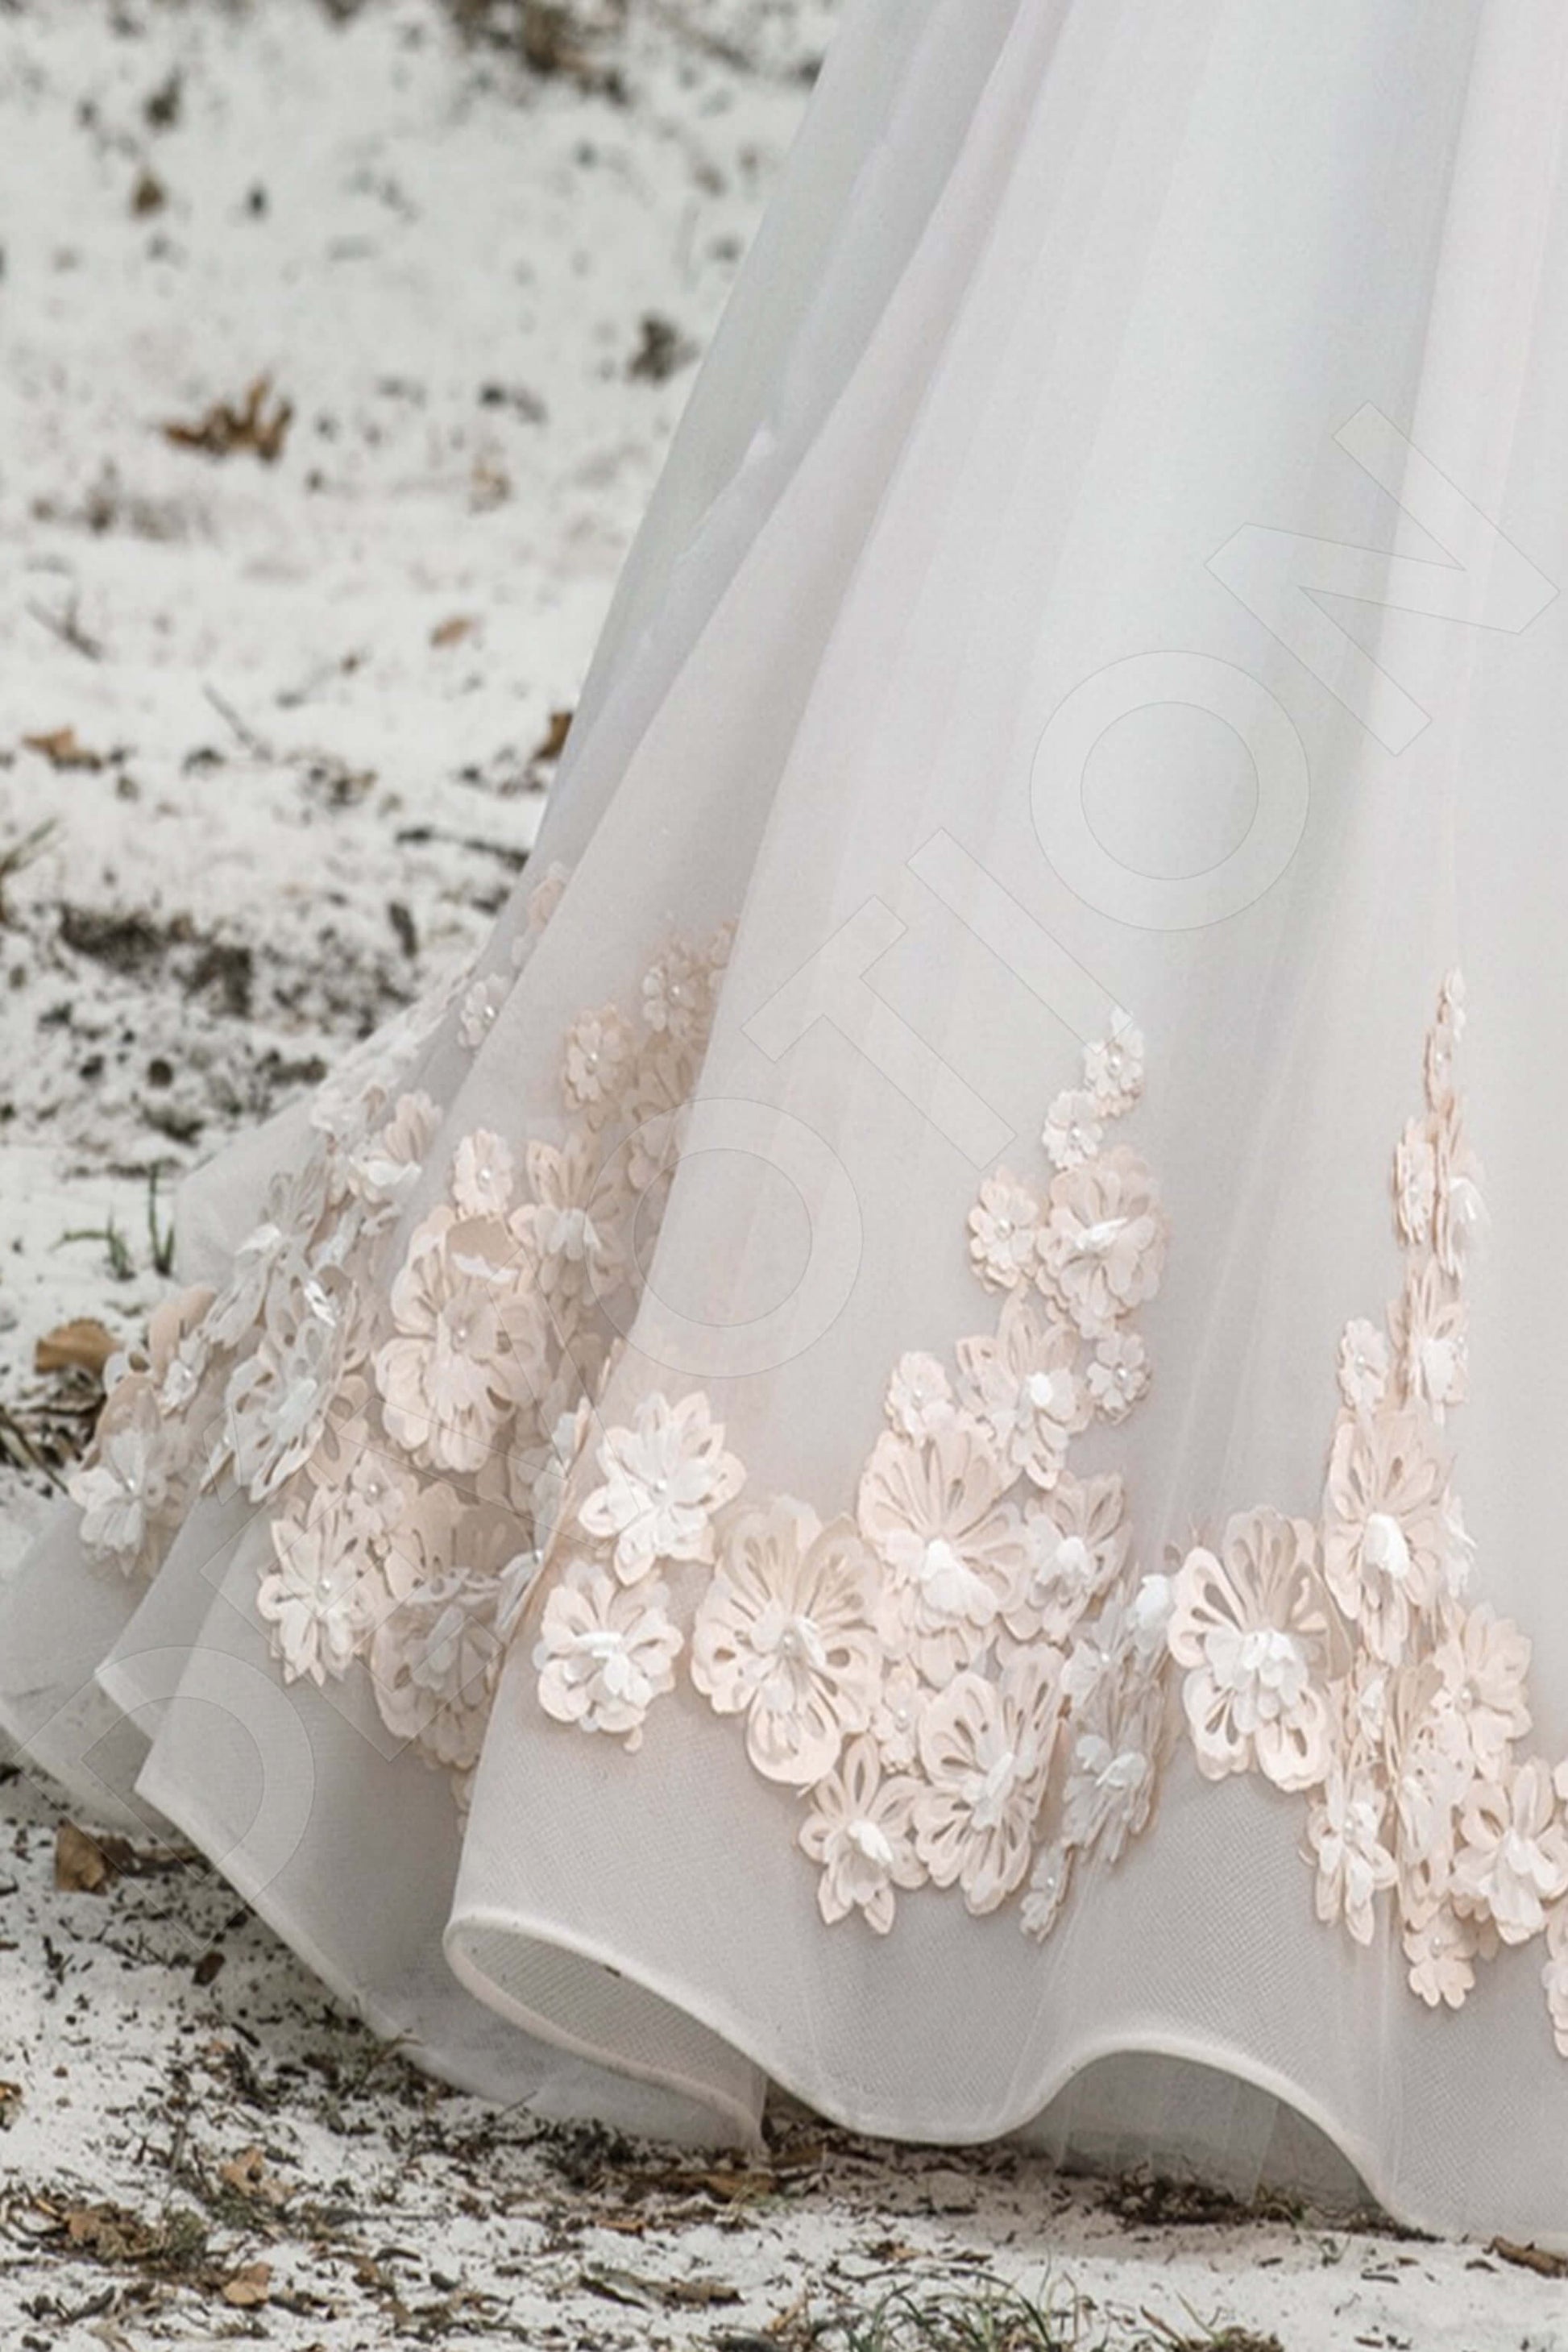 Ambrosia Princess/Ball Gown Boat/Bateau White Powder Wedding dress